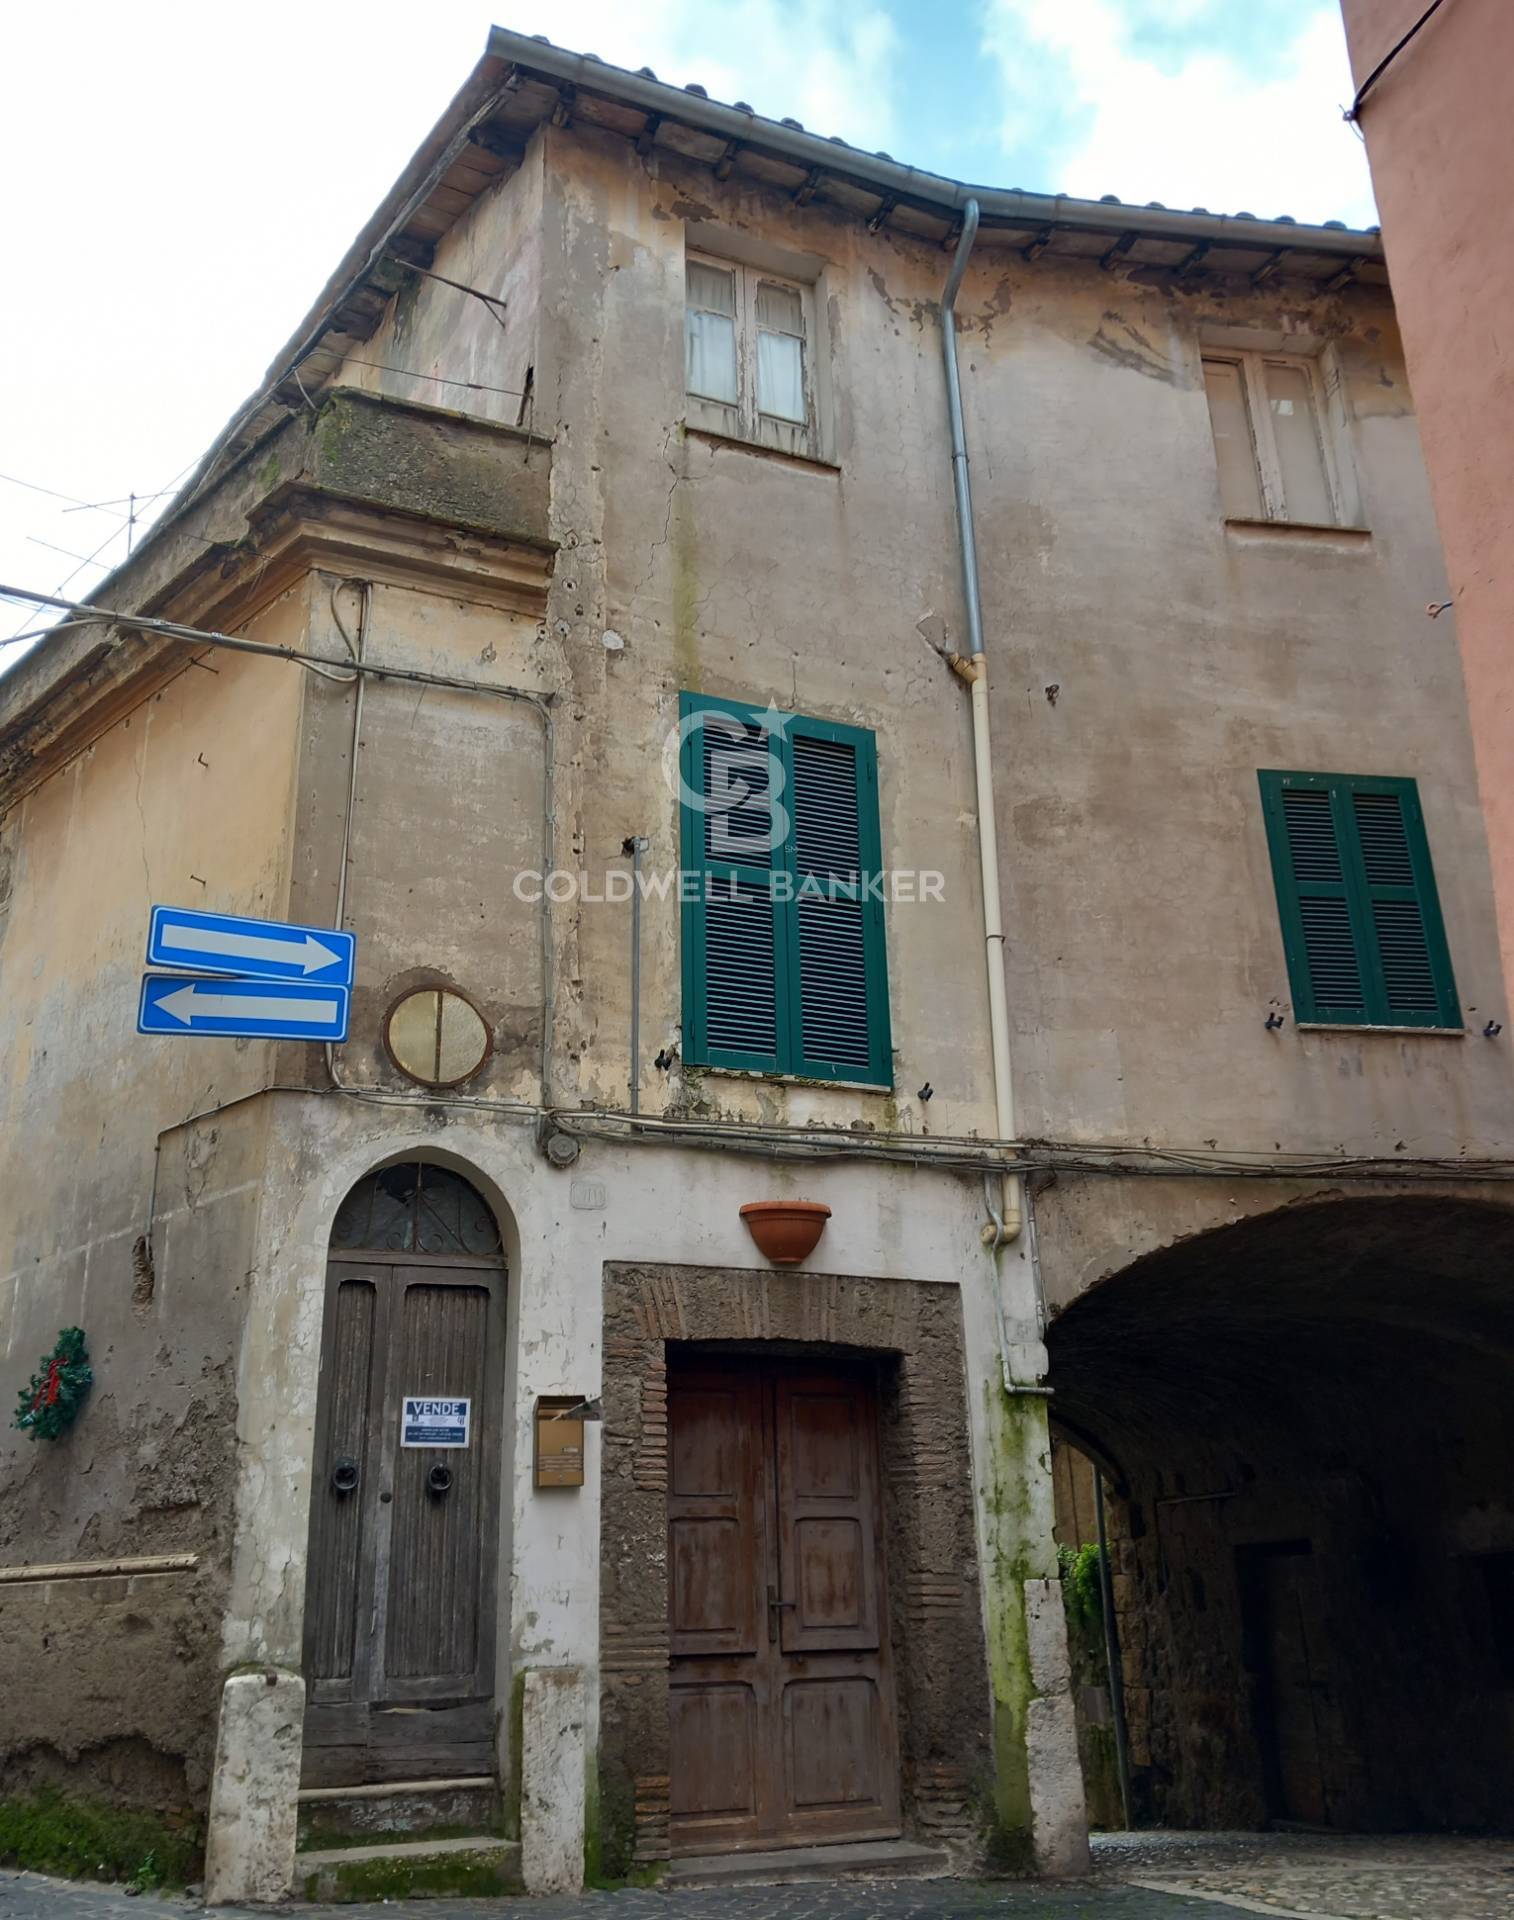 Rustico / Casale in vendita a Gallese, 7 locali, prezzo € 35.000 | PortaleAgenzieImmobiliari.it